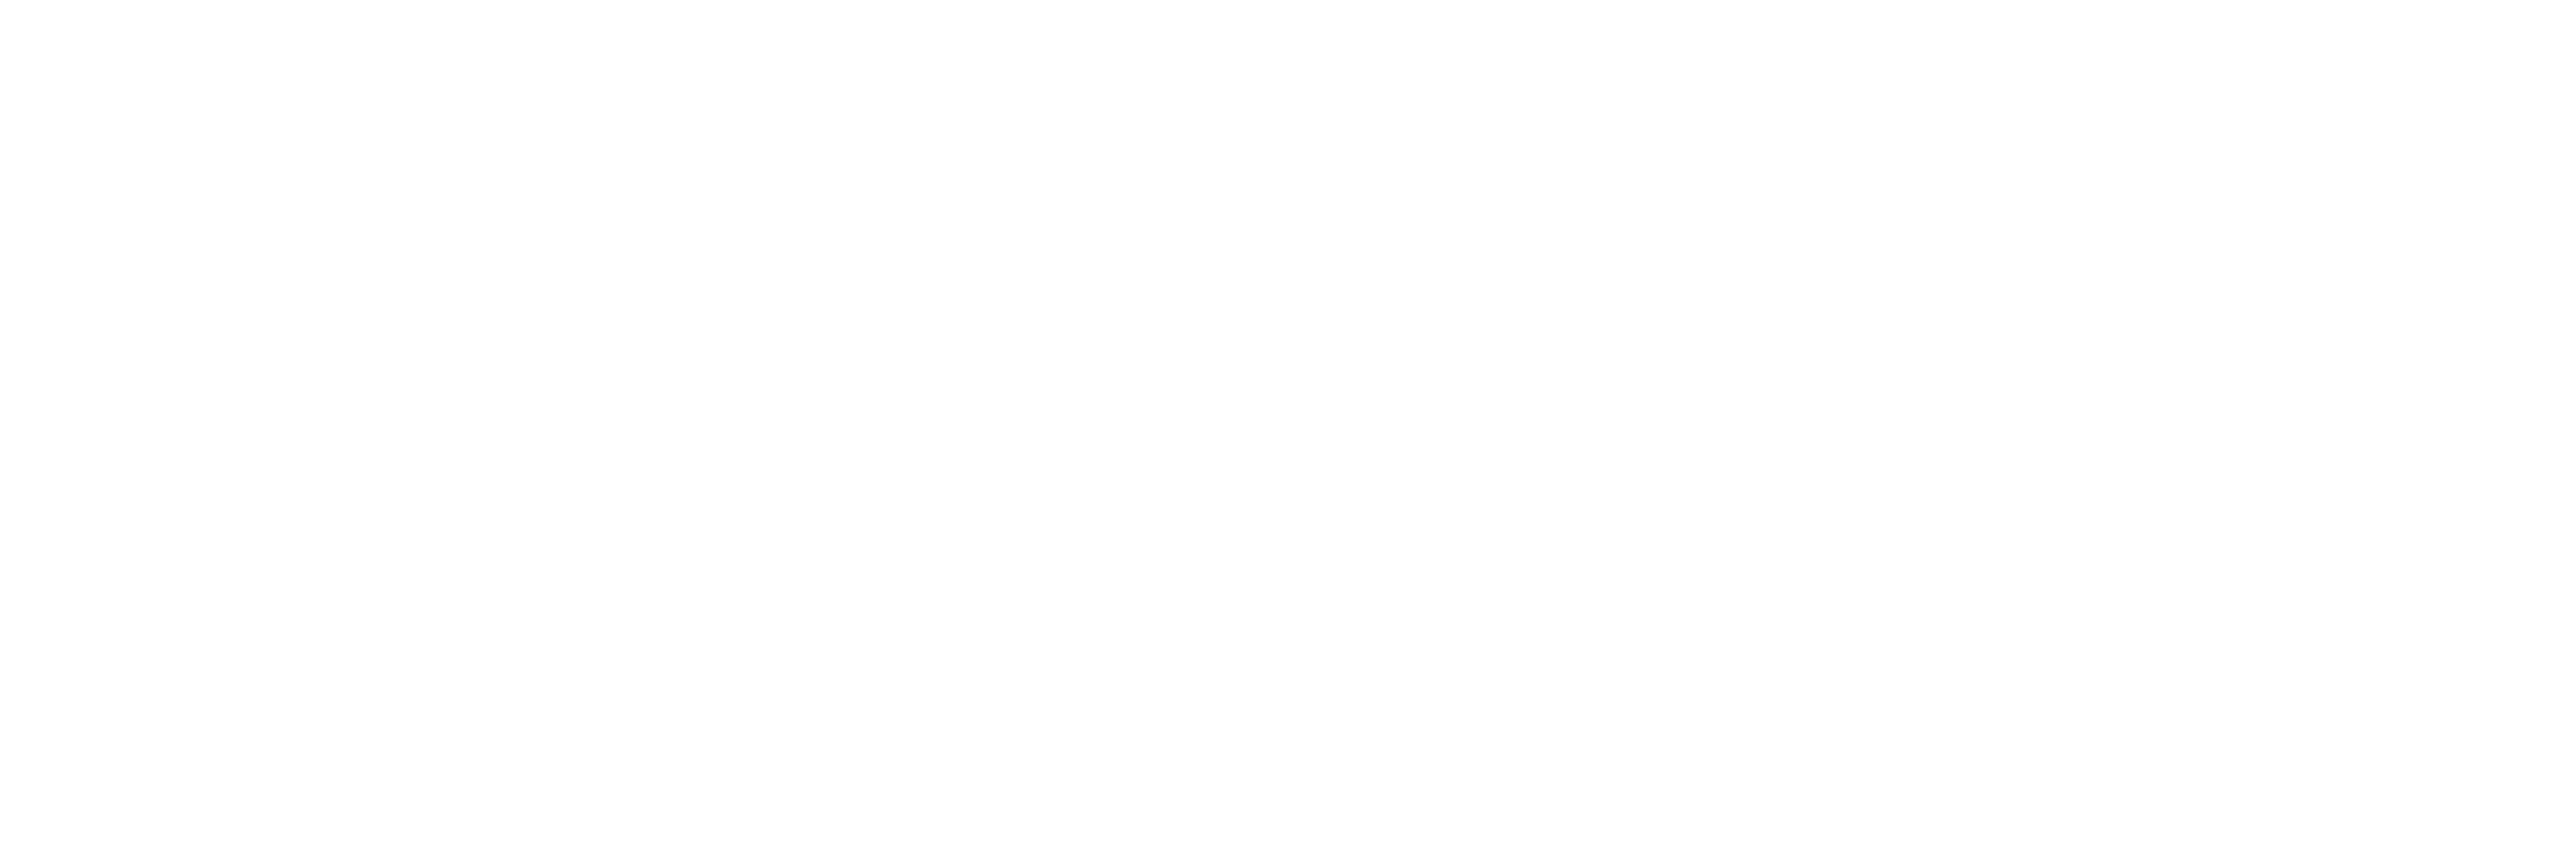 illum-roma-bianco